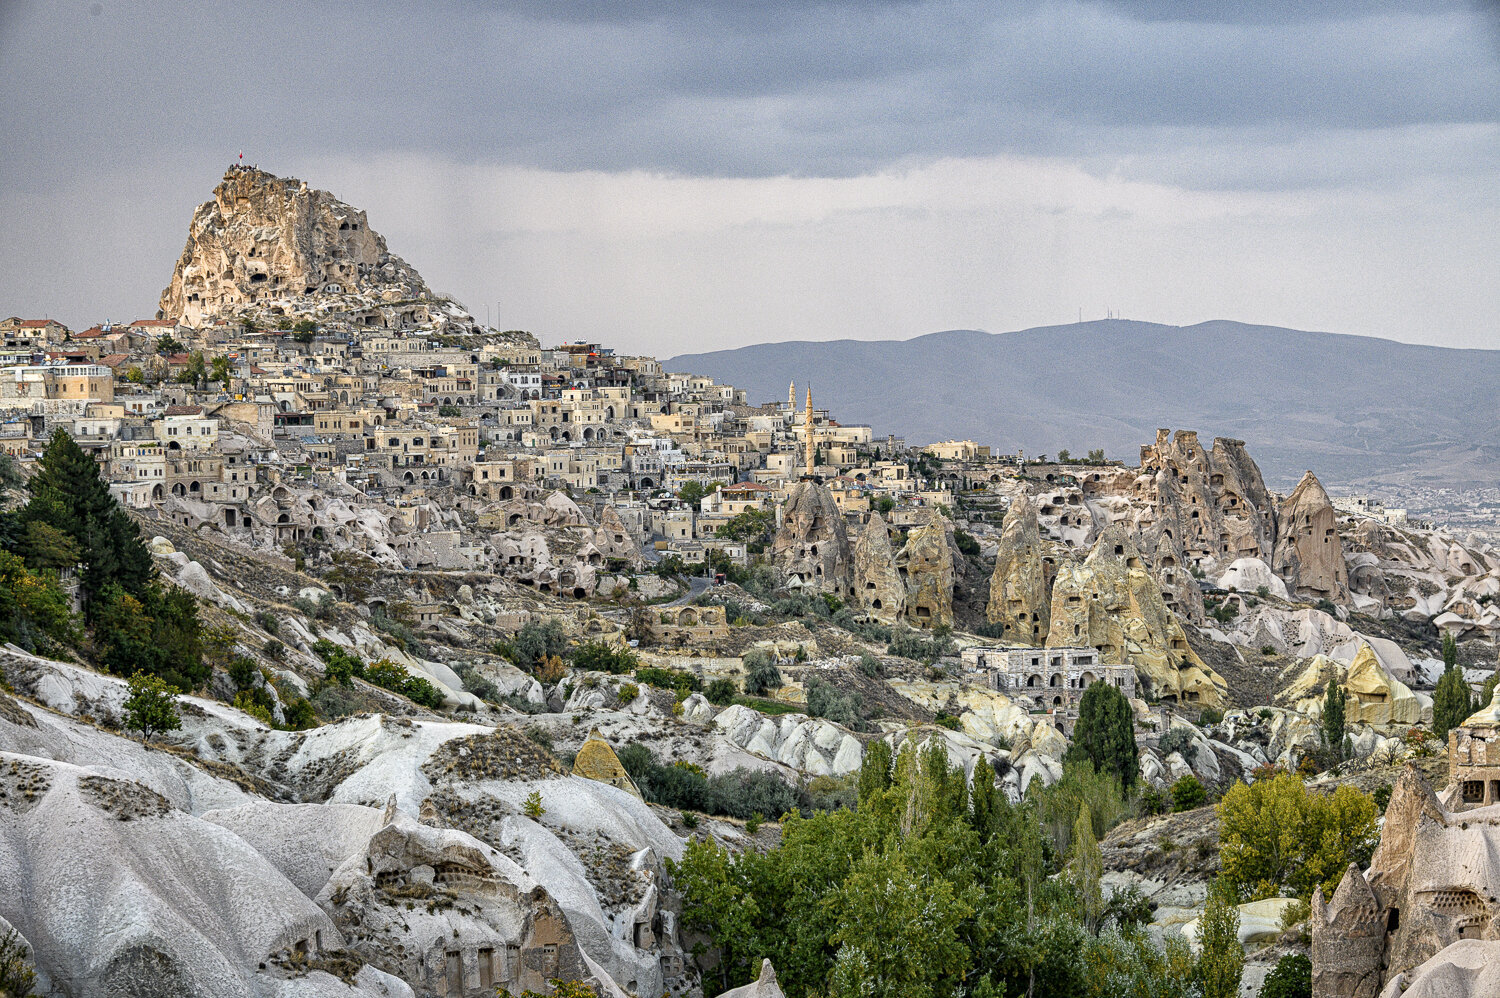 Cappadocia - I, Turkey